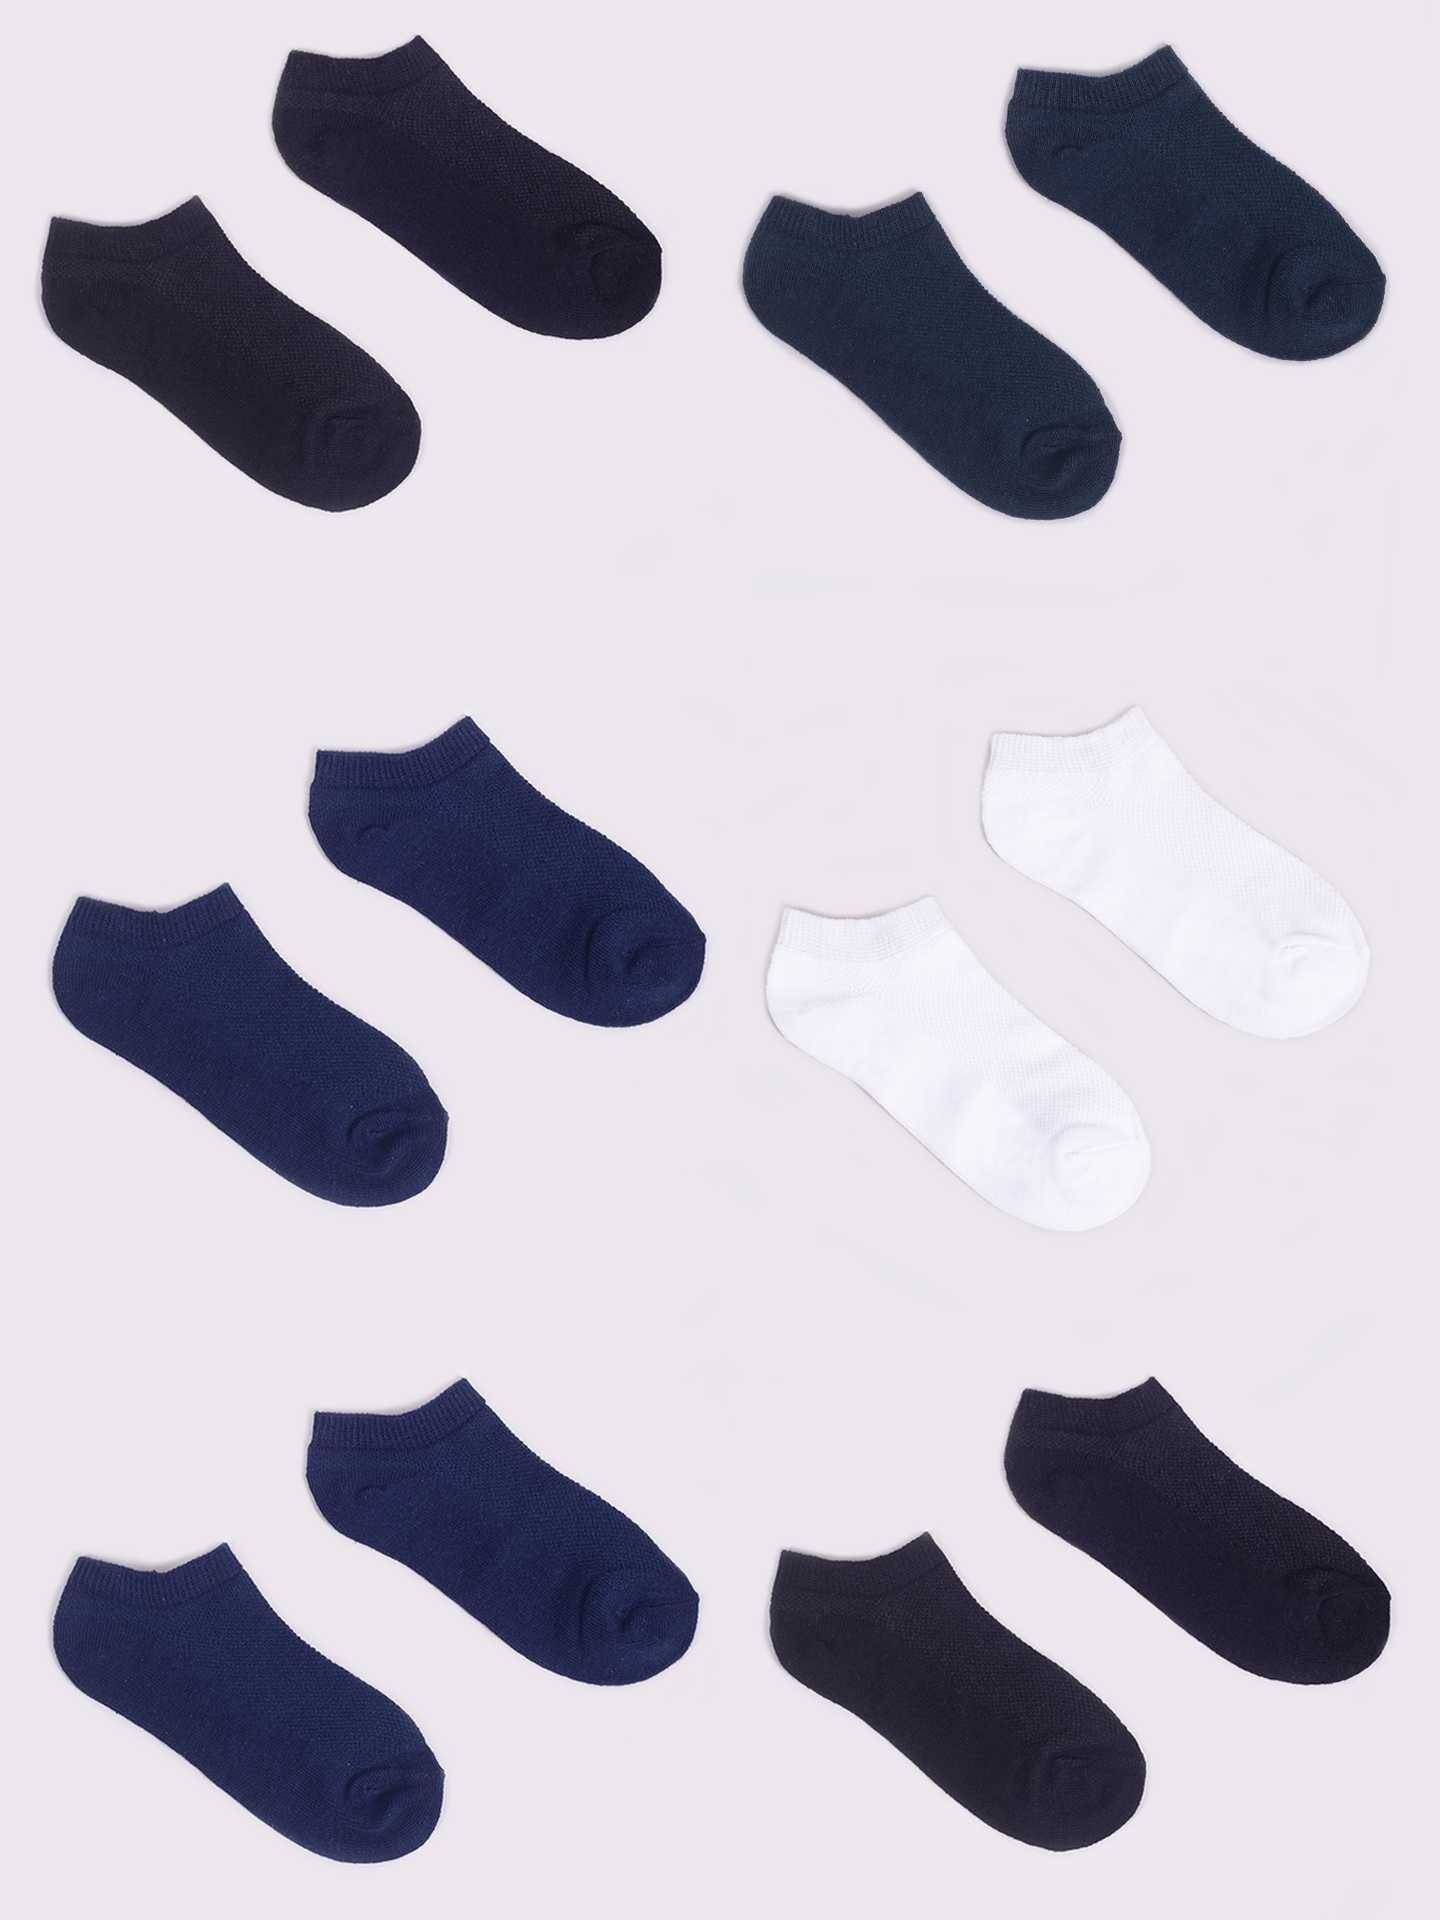 Levně Yoclub Kids's Boys' Ankle Thin Cotton Socks Basic Plain Colours 6-Pack SKS-0027C-0000-004